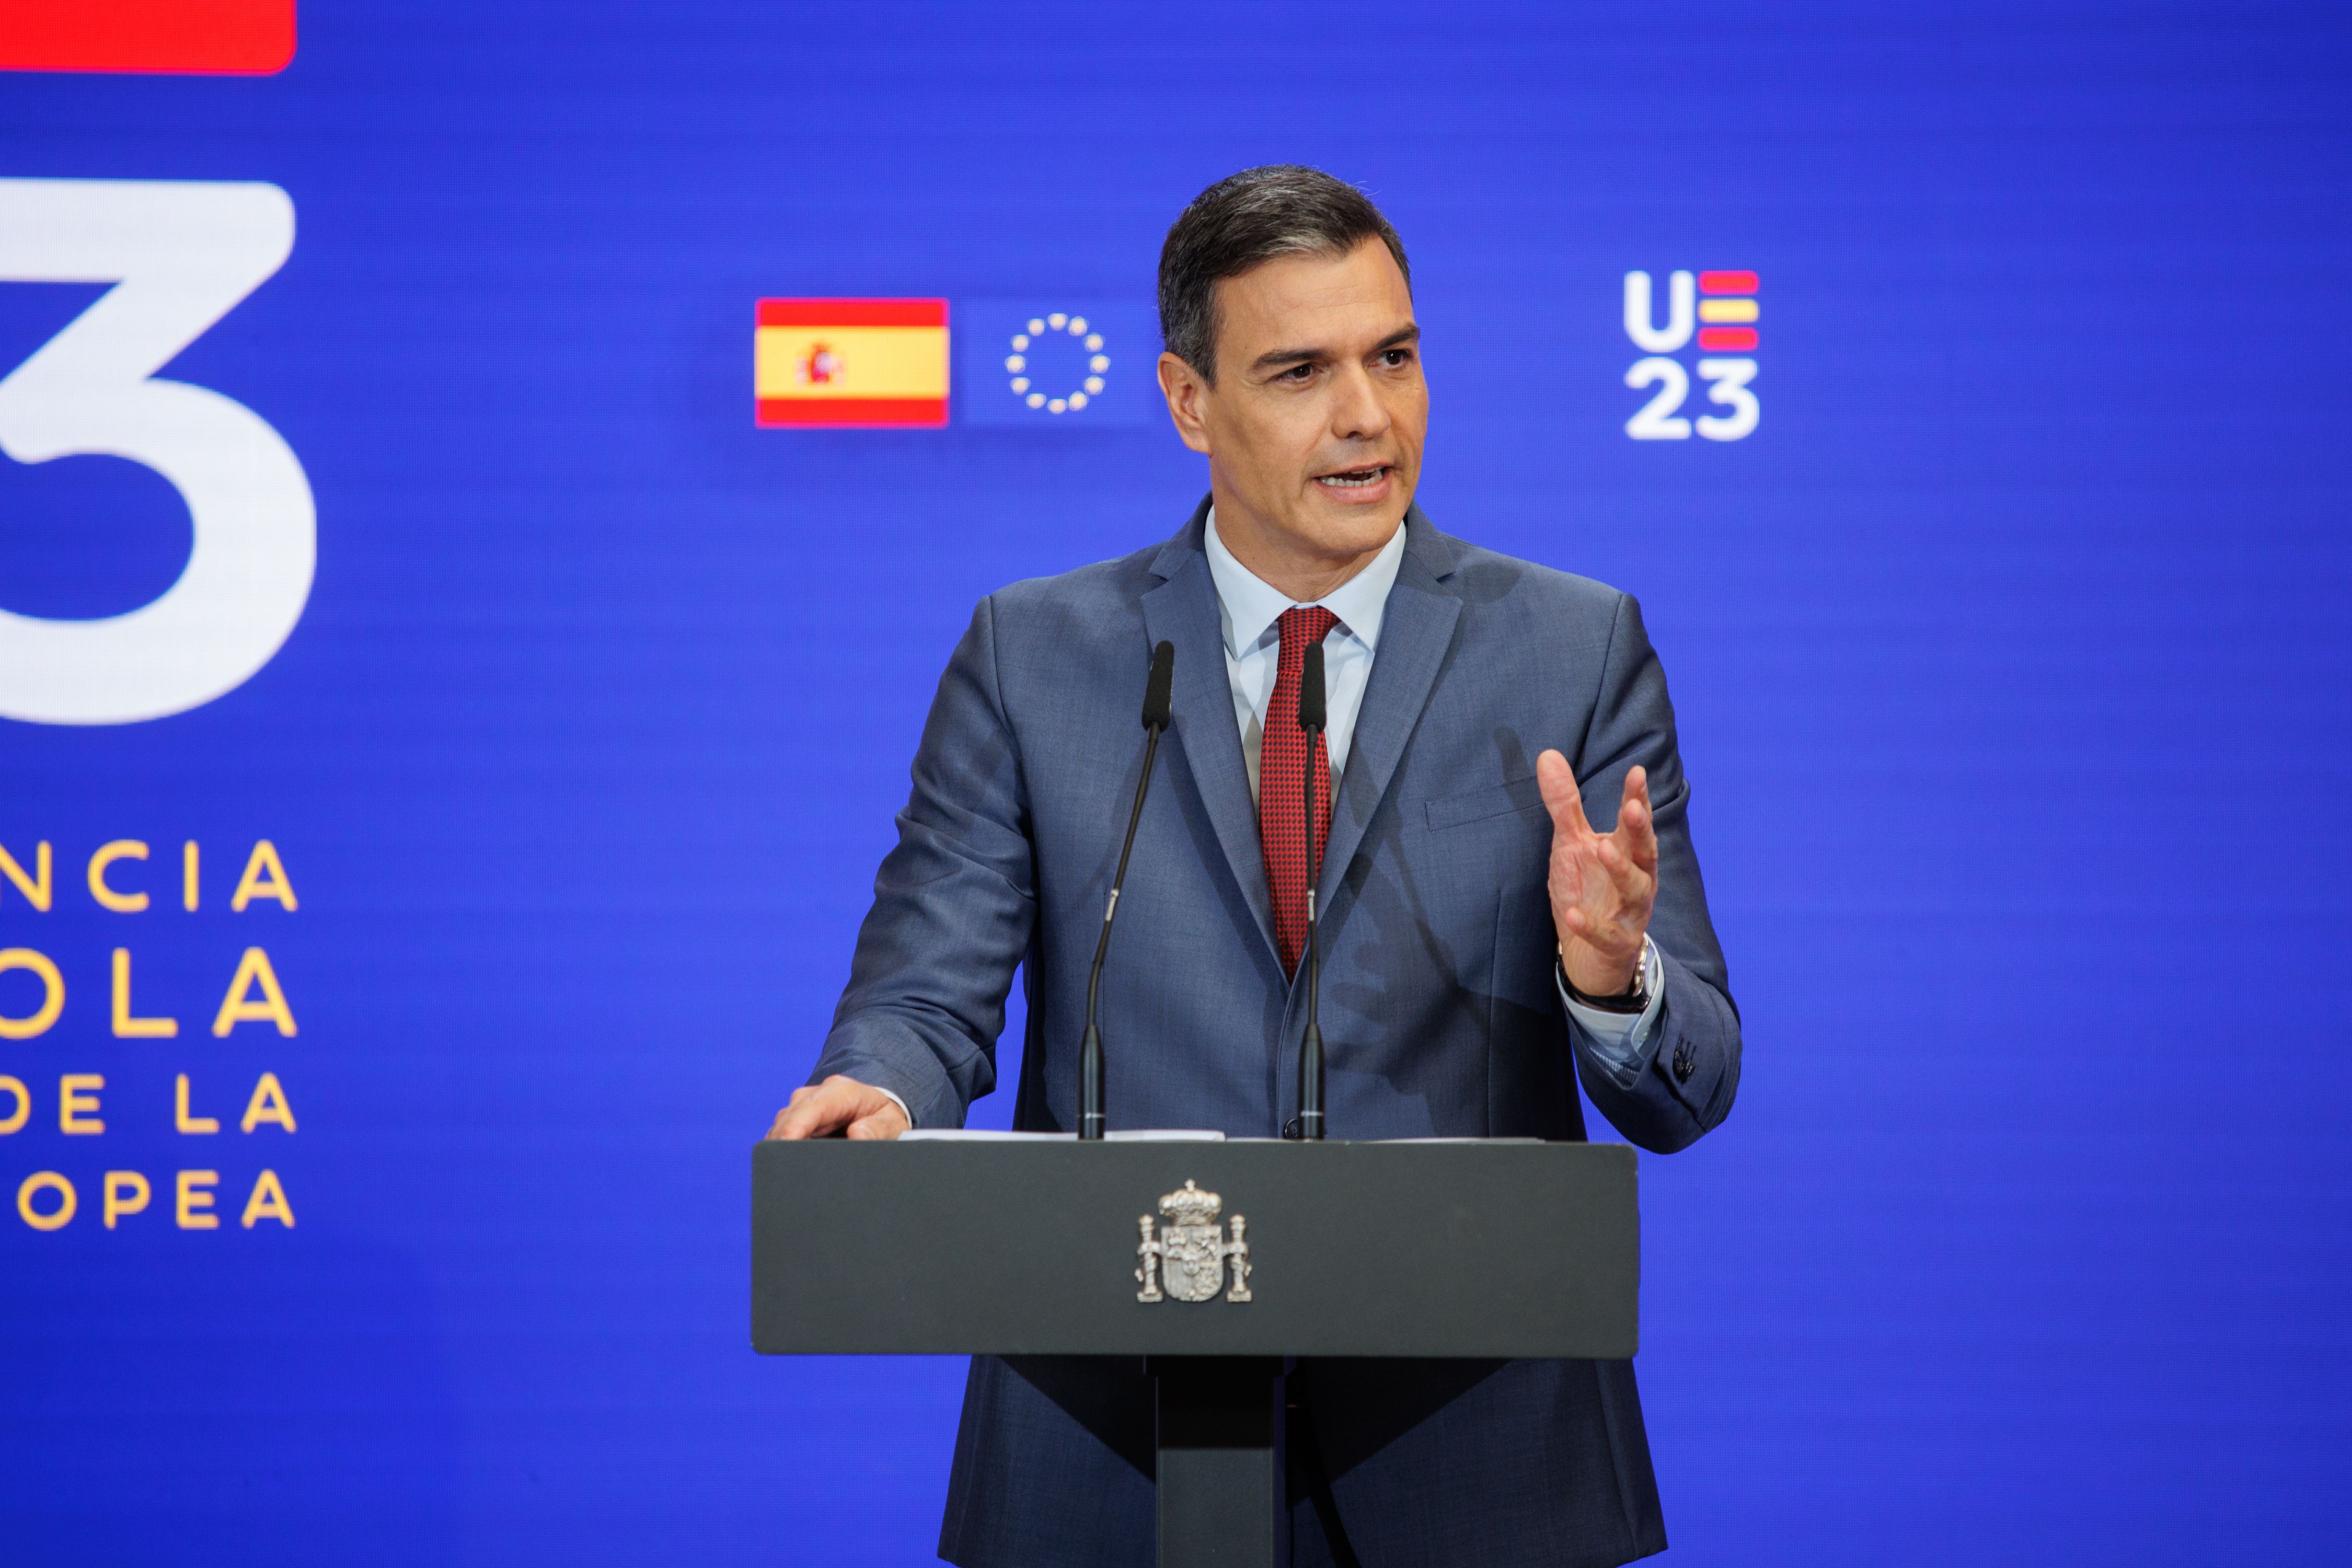 ¿Cuáles son las prioridades de la Presidencia española de la Unión Europea?